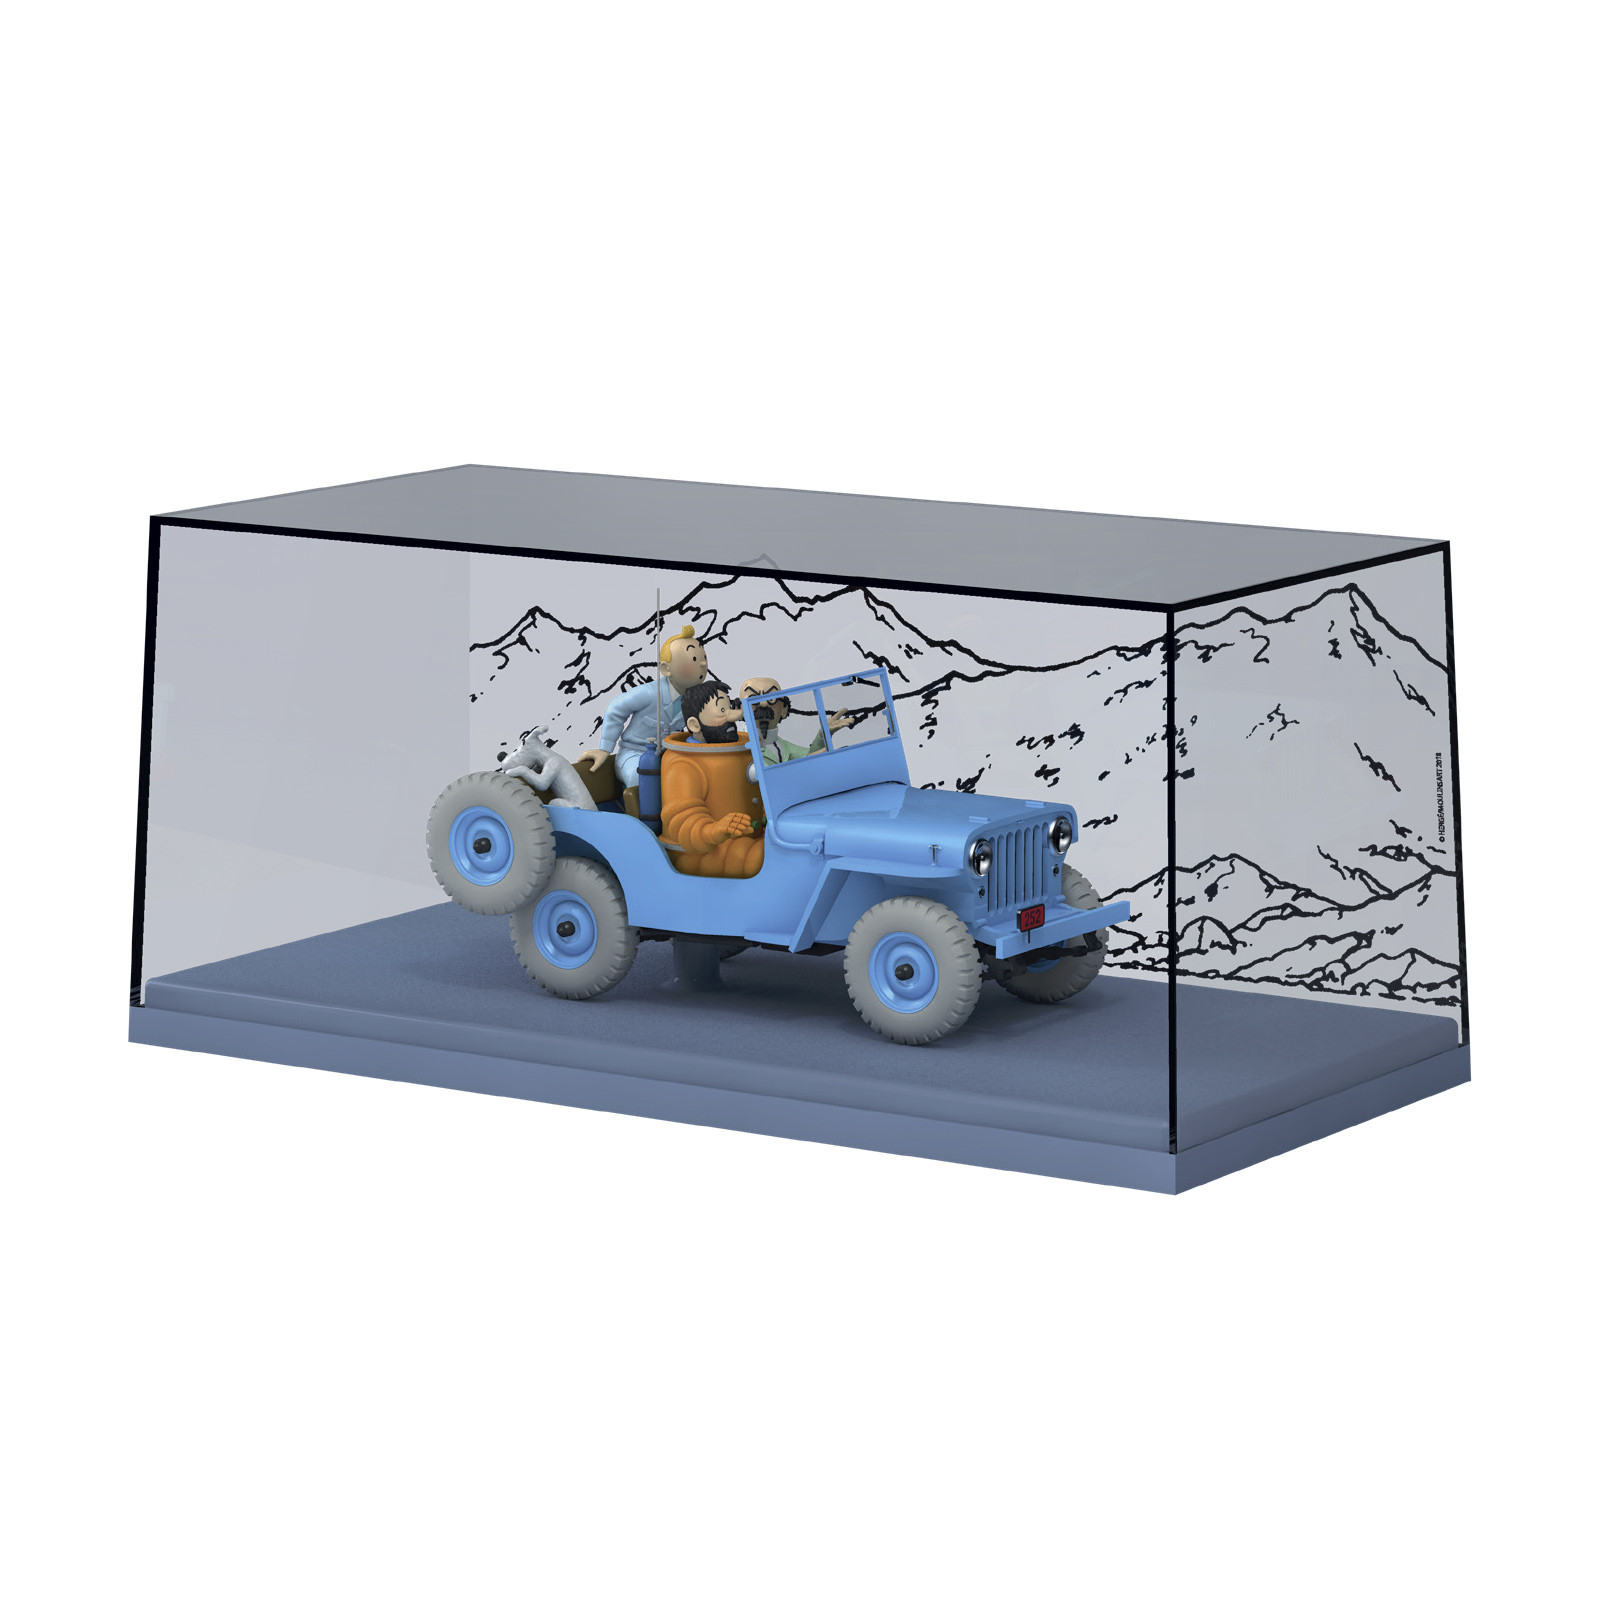 Hachette : Construisez la Jeep d'Objectif Lune de Tintin au 1/8 - PDLV